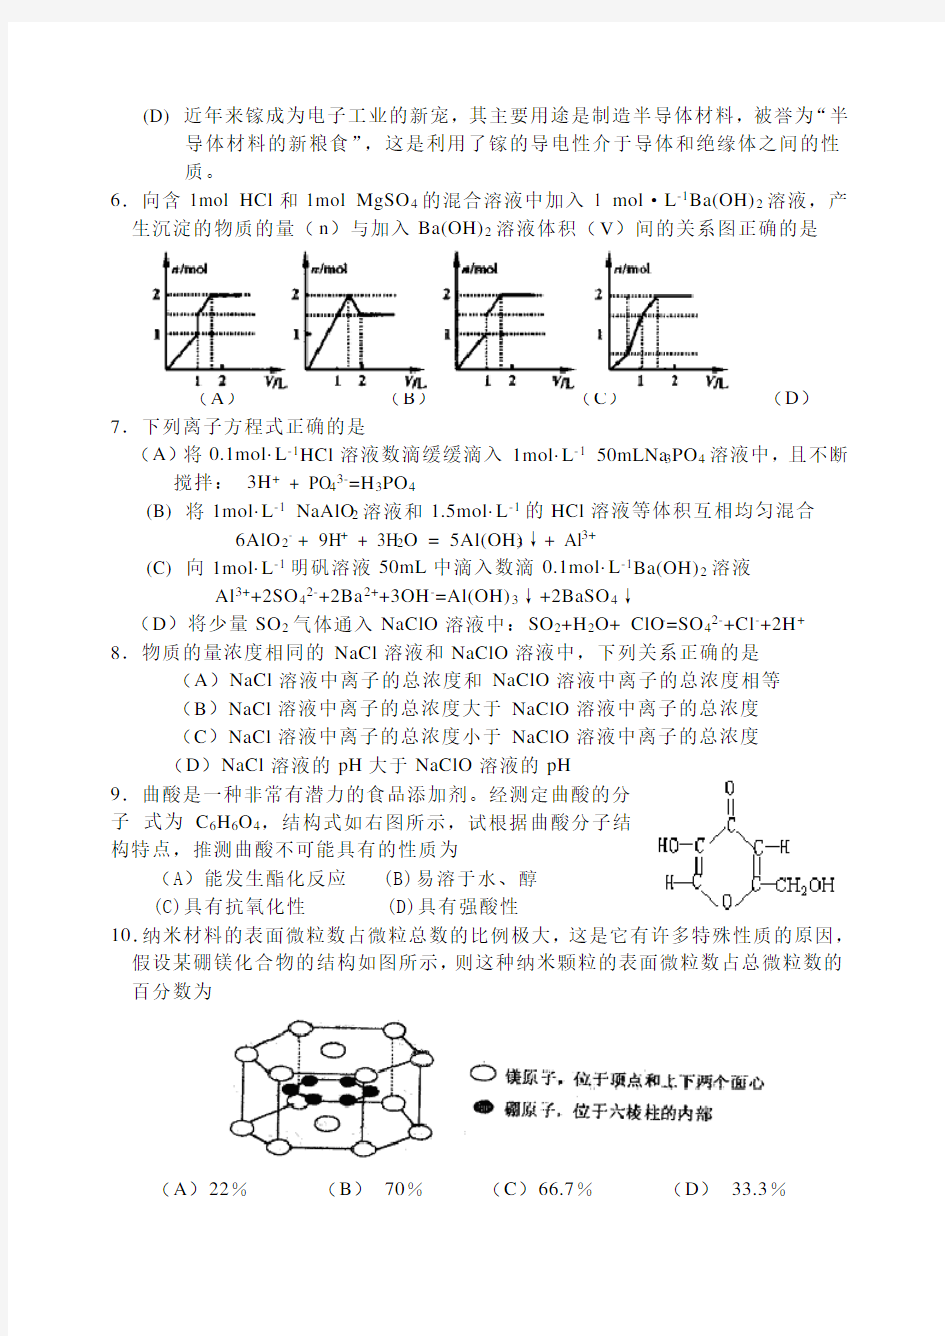 2020年浙江省高中学生化学竞赛试题及参考答案